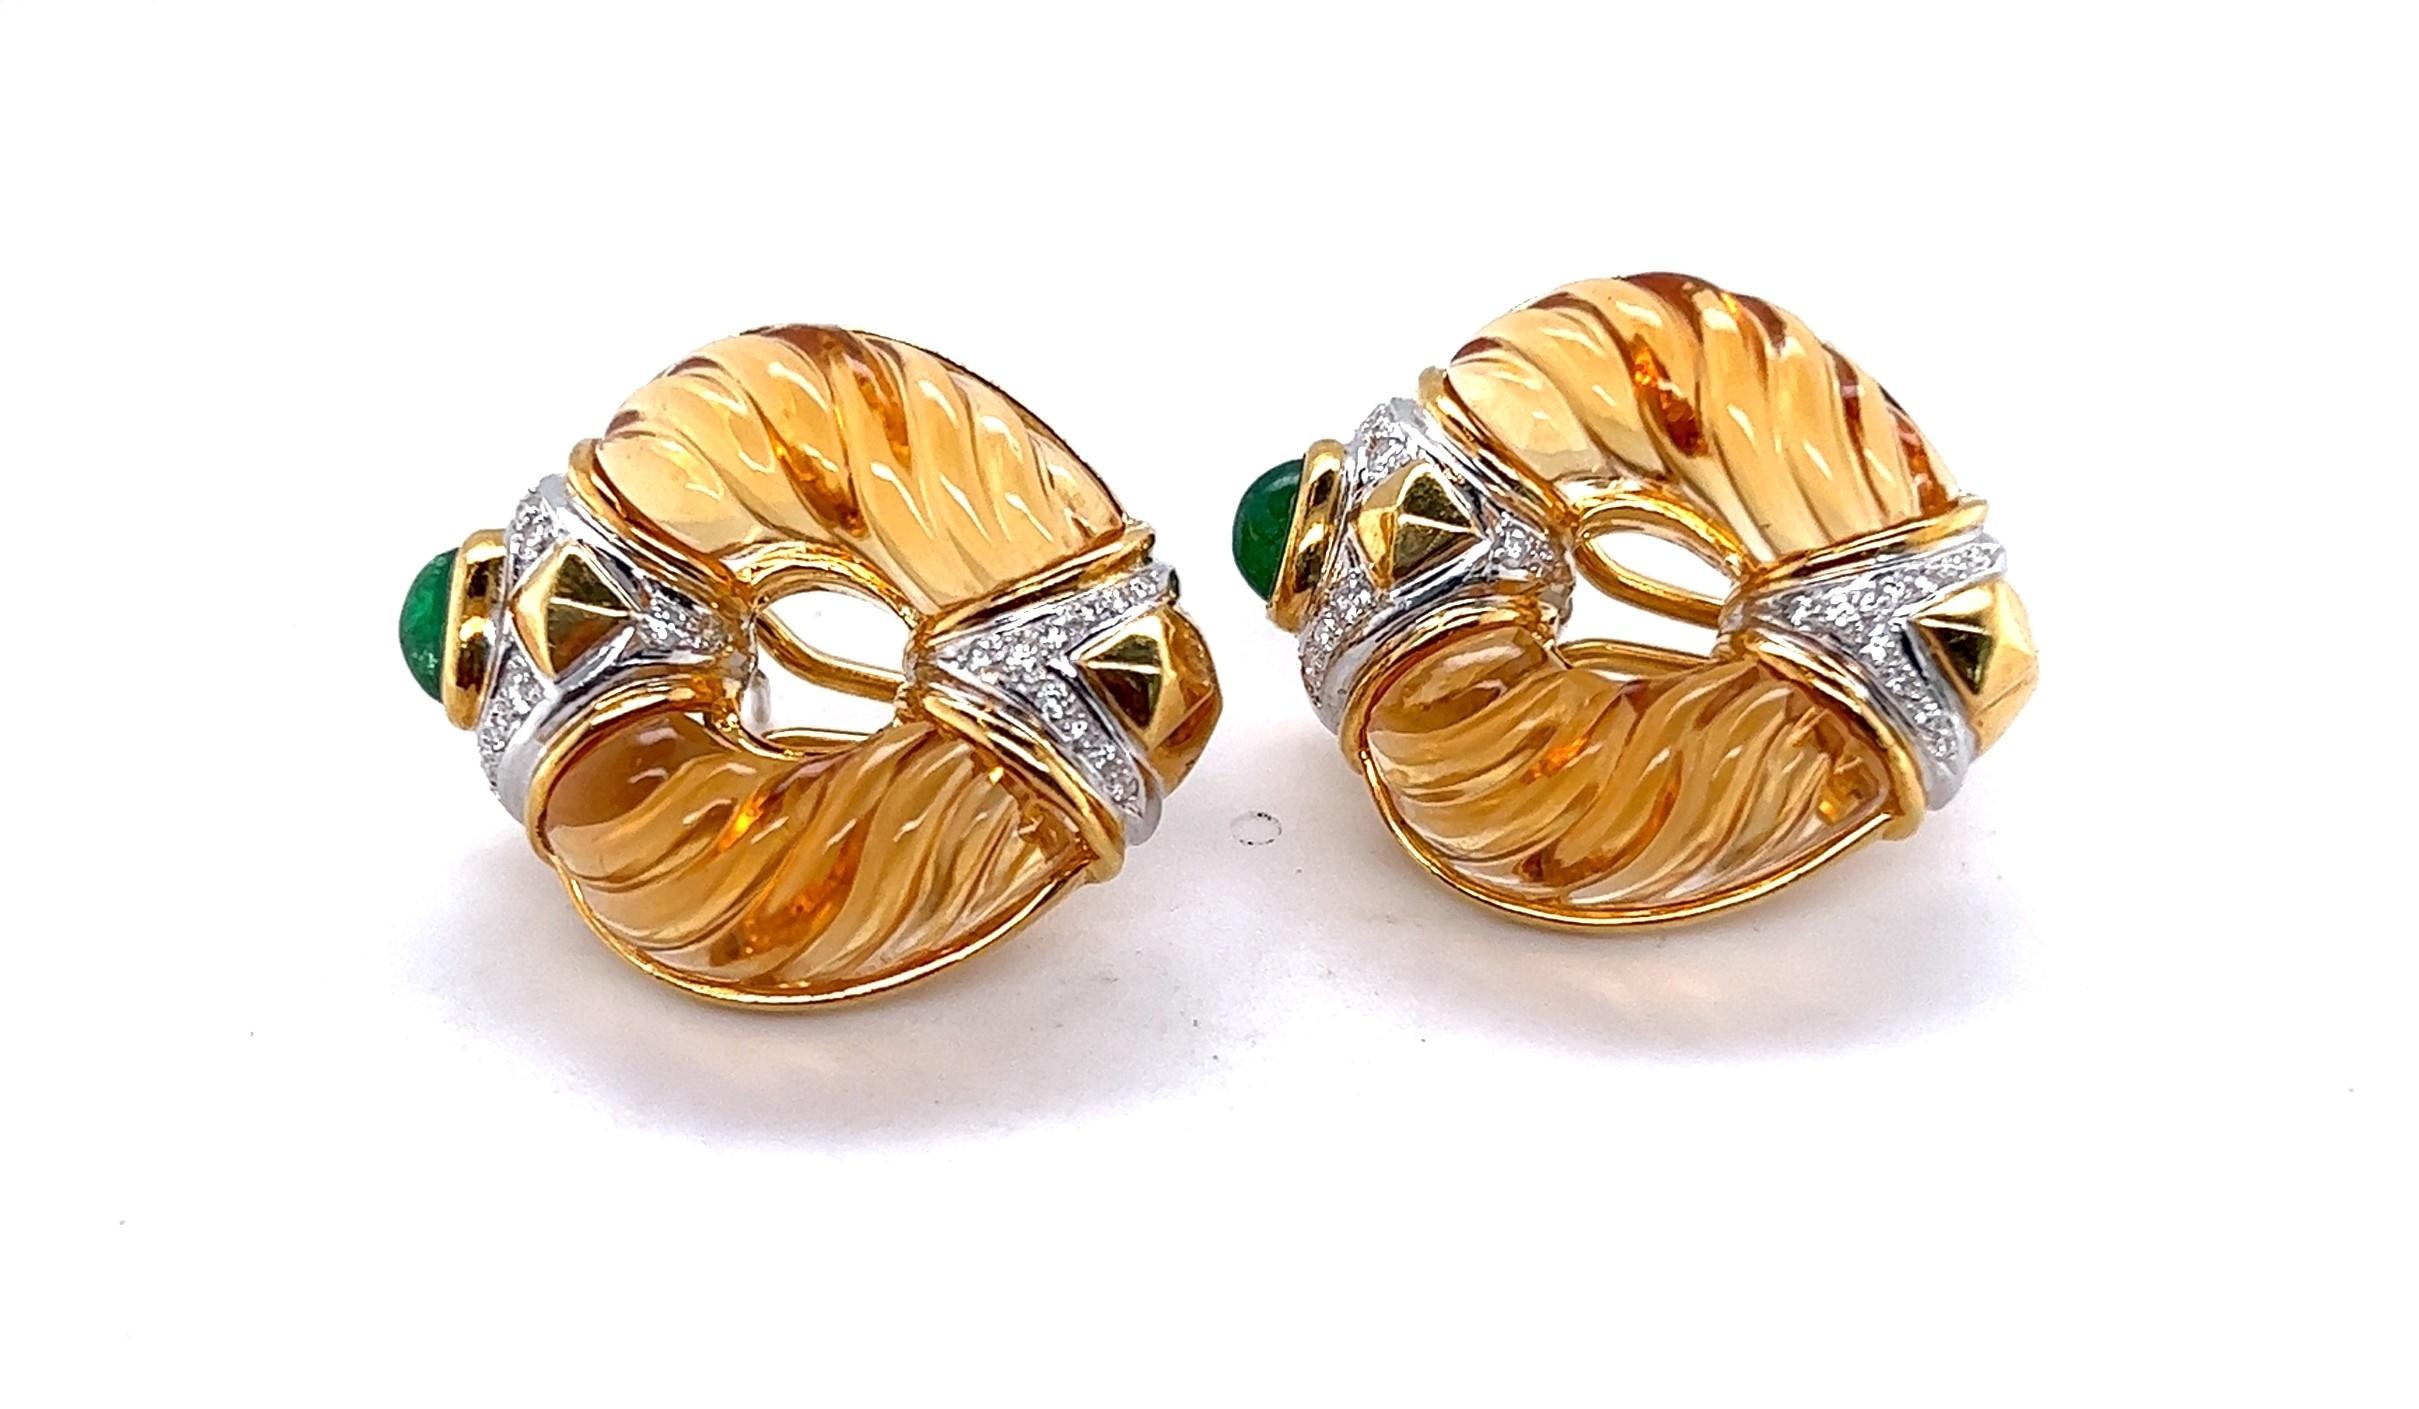 Individuell gefertigte Omega-Ohrringe aus 14-karätigem Gelbgold mit handgeschnitzten Zitrinen, Smaragd-Cabochons und Diamanten, gefasst in 18-karätigem Weißgold. Die Diamanten wiegen etwa 0,24 Karat und haben eine durchschnittliche Farbe von G-H und